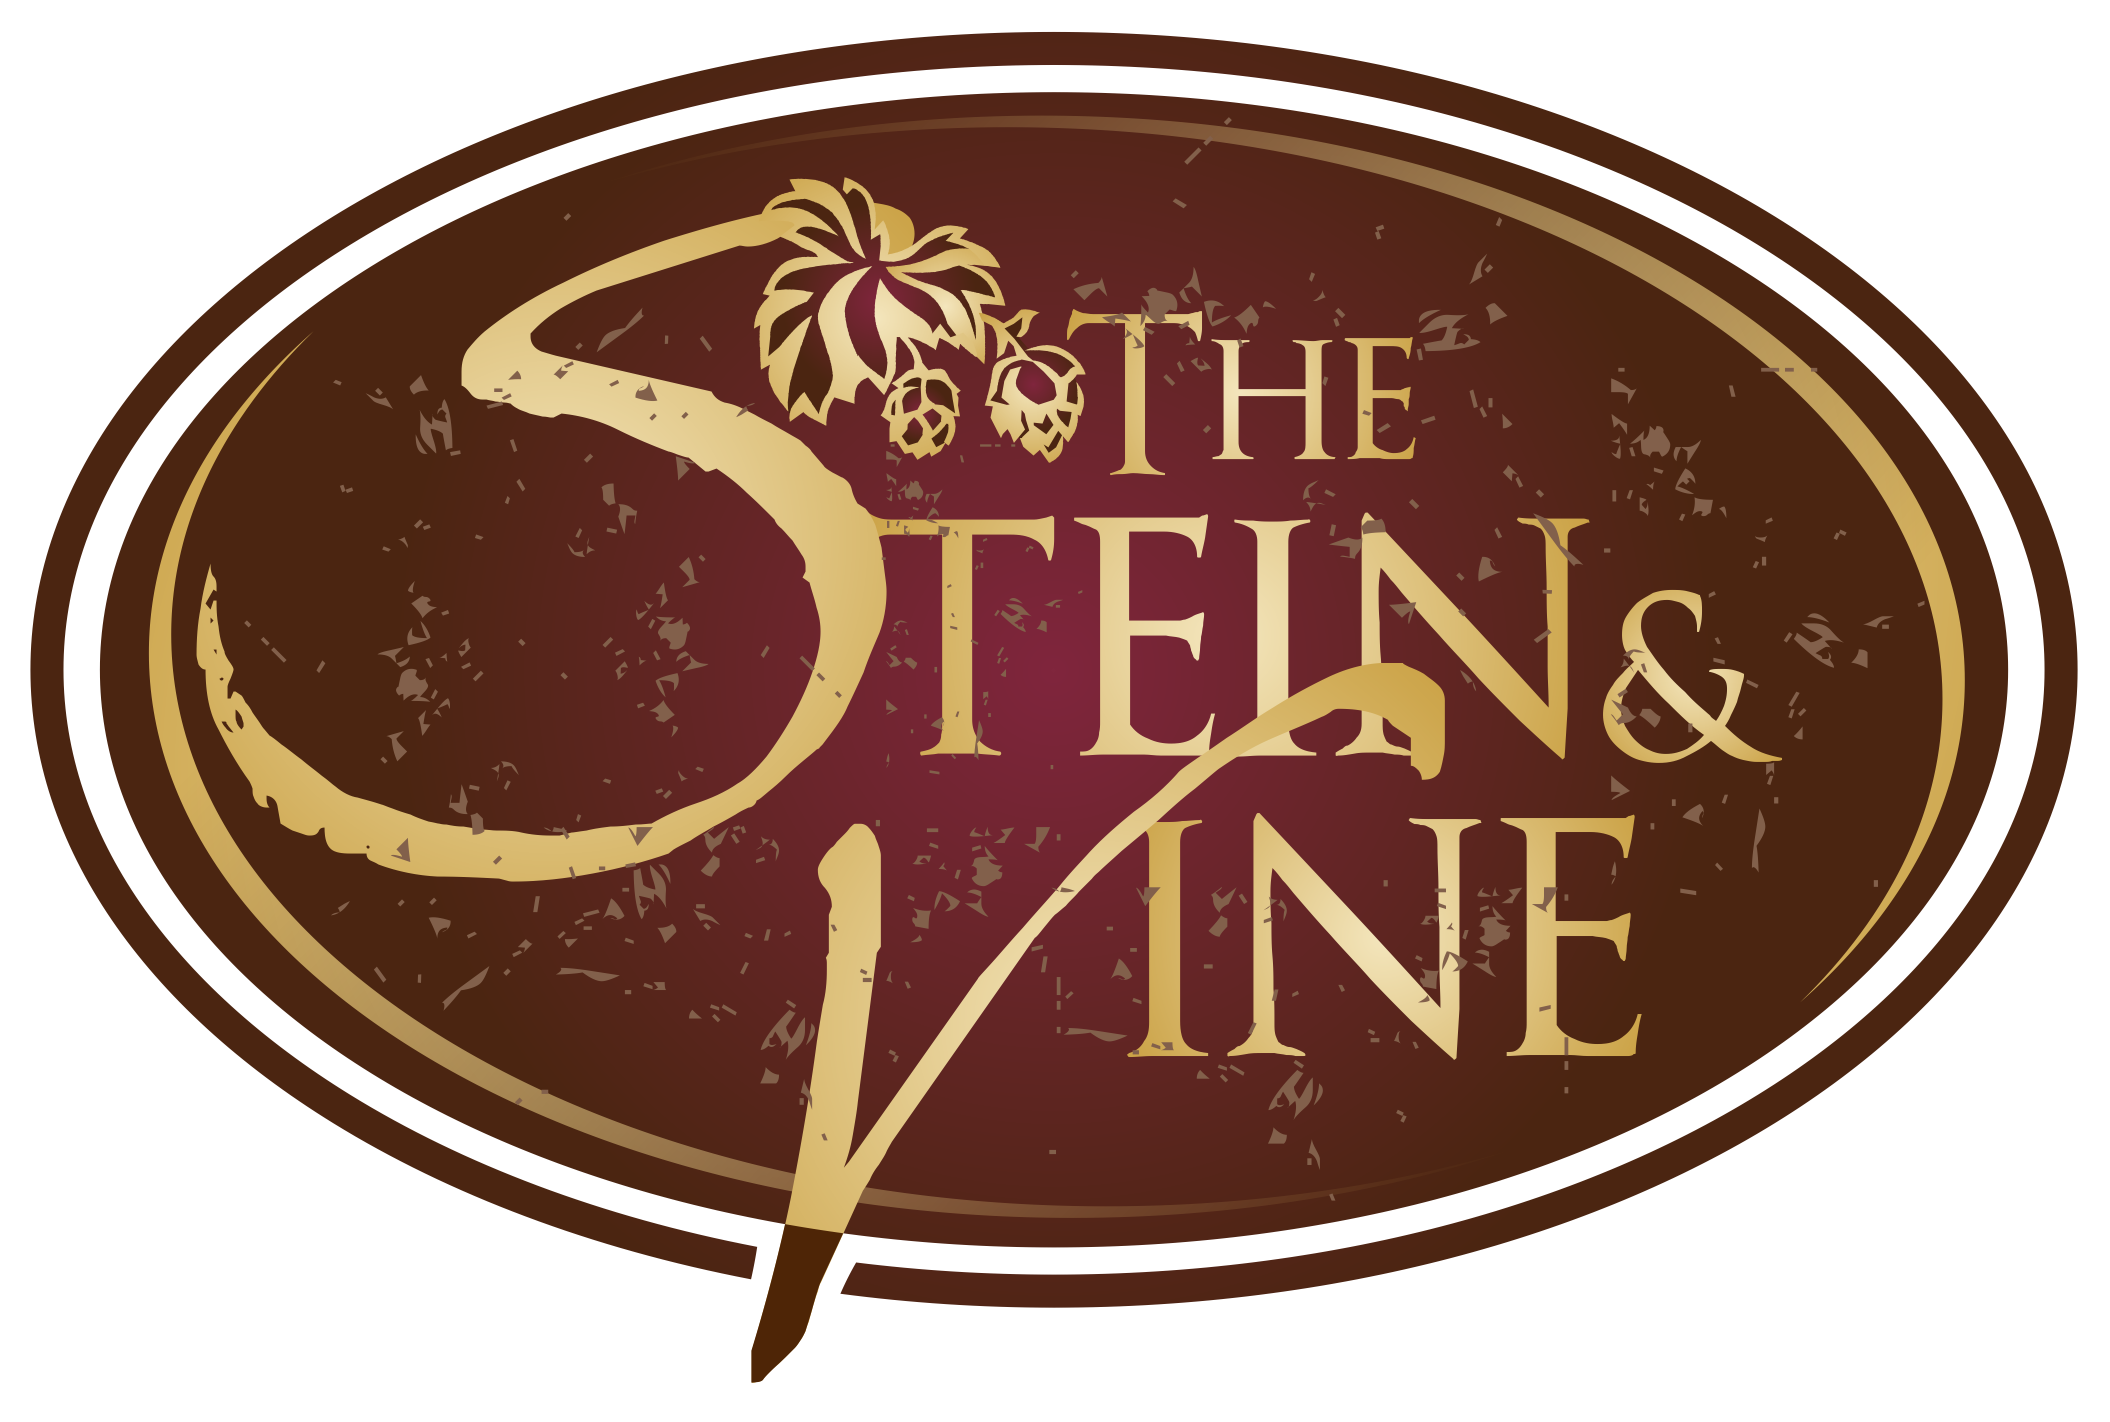 The Stein & Vine